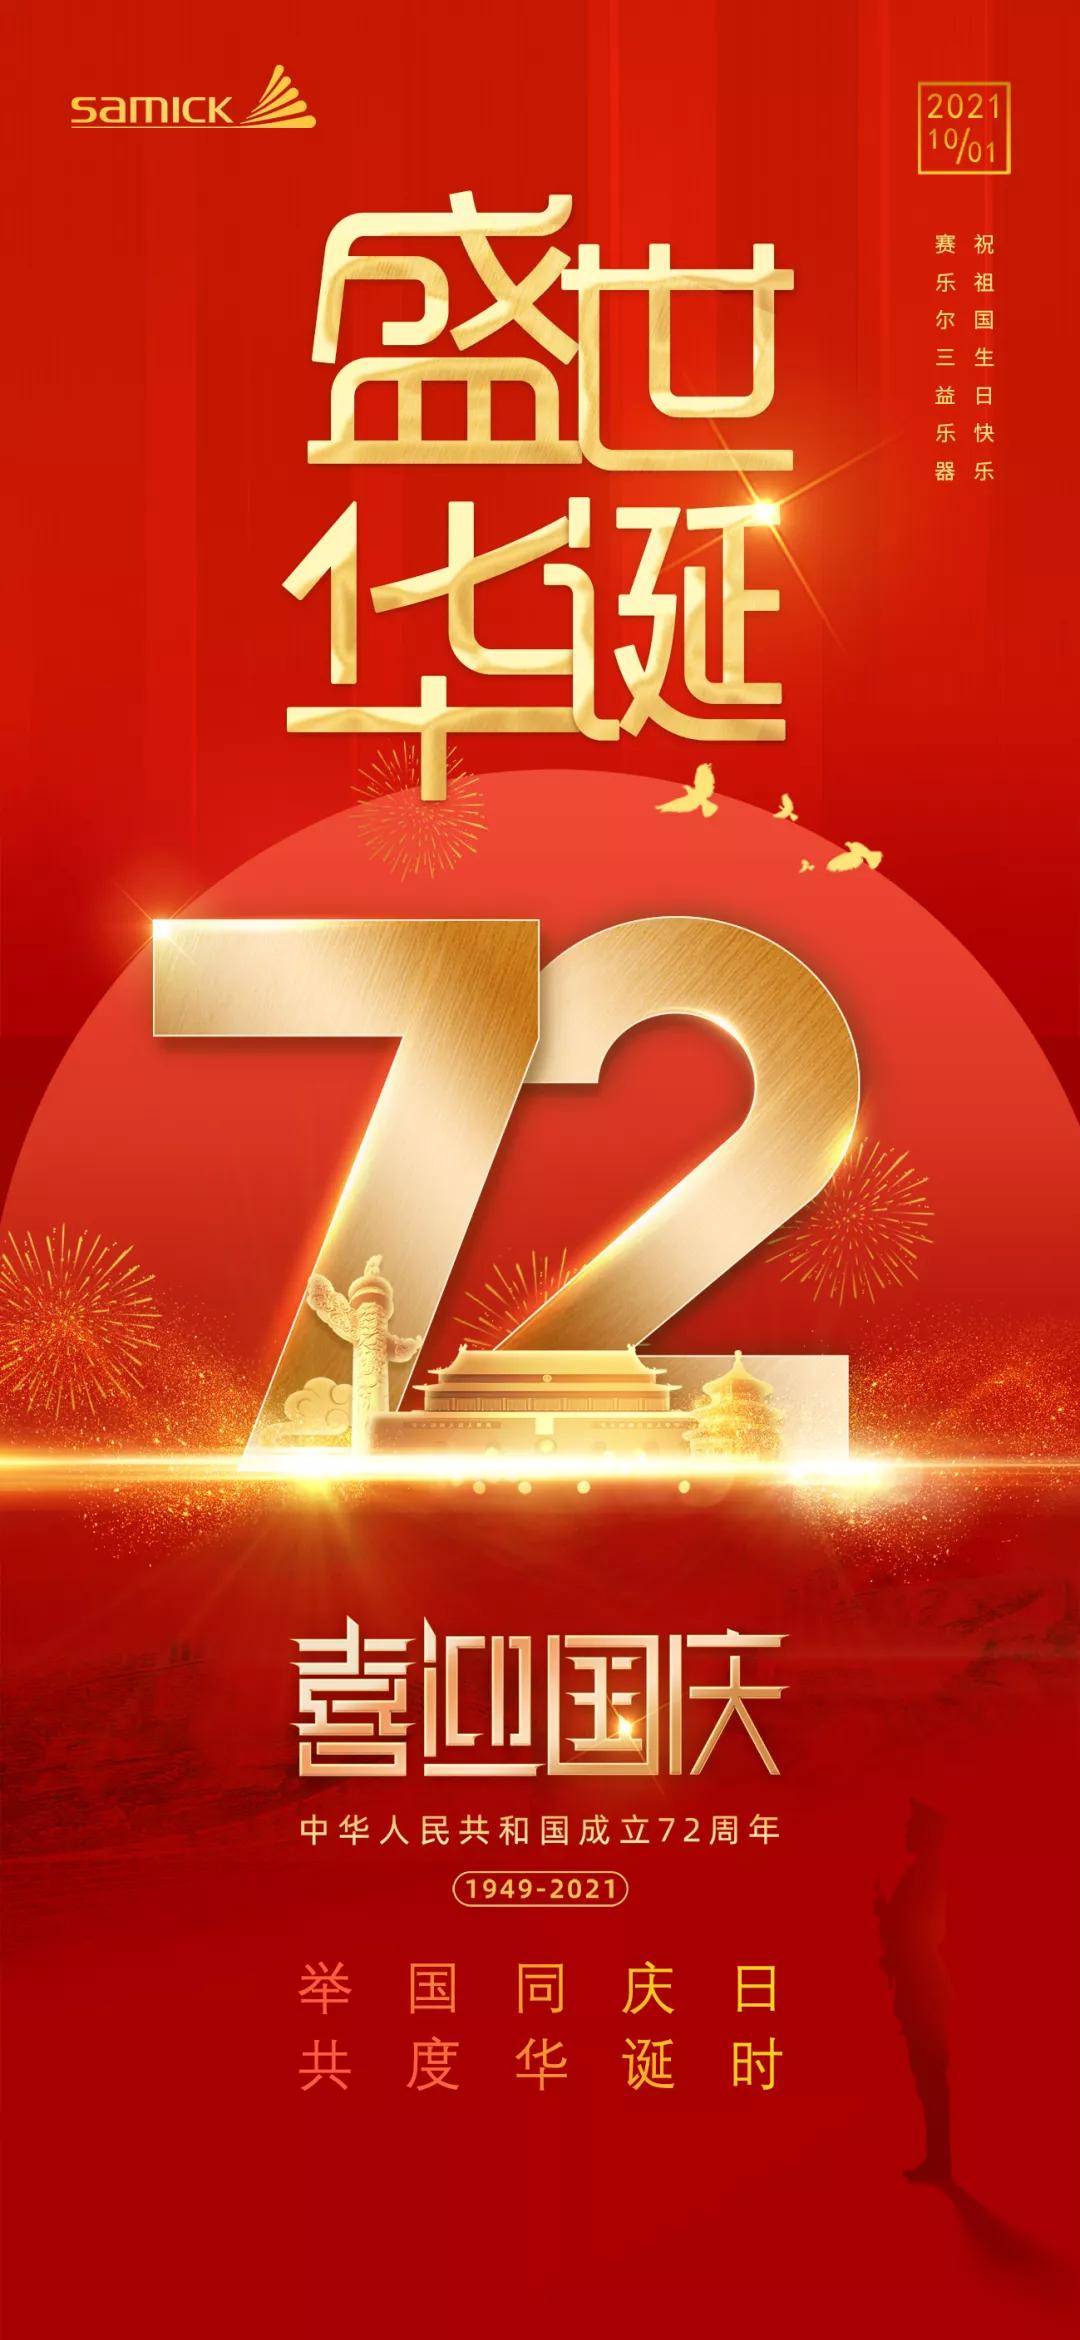 国庆献礼|一首钢琴版《我爱你中国》献给祖国72岁华诞,愿祖国繁荣昌盛